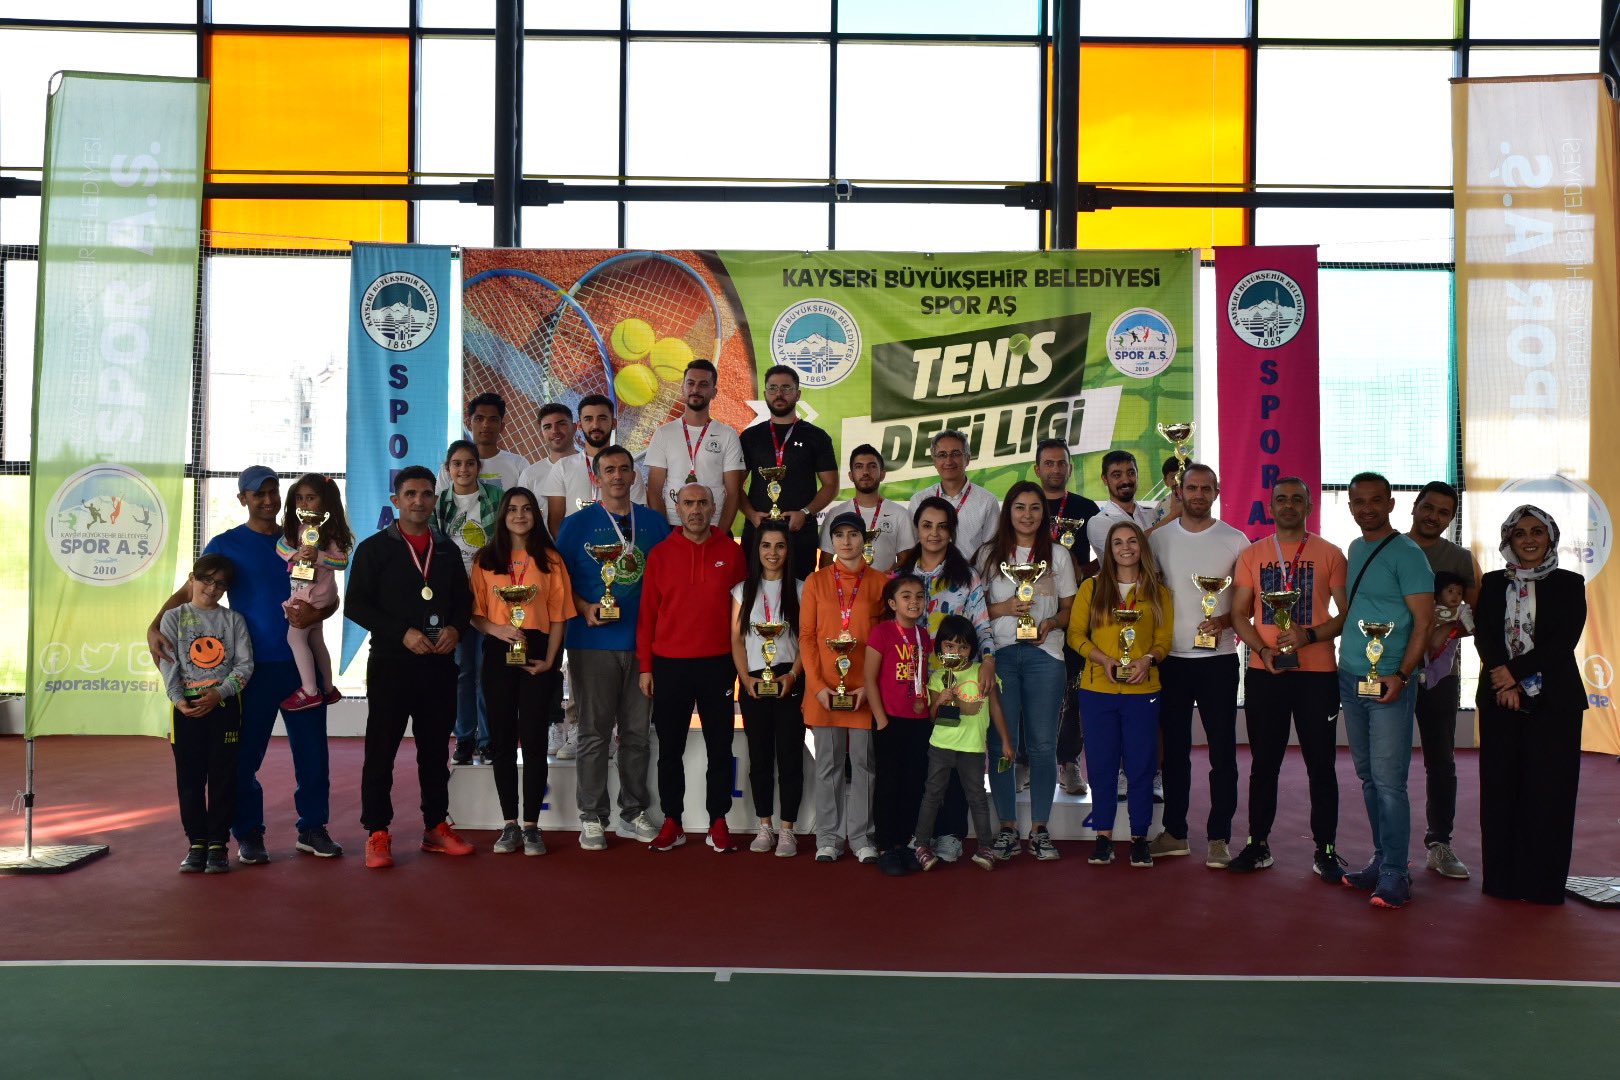 Başkan Büyükkılıç’tan Tenis Defi Ligi sporcularına tebrik